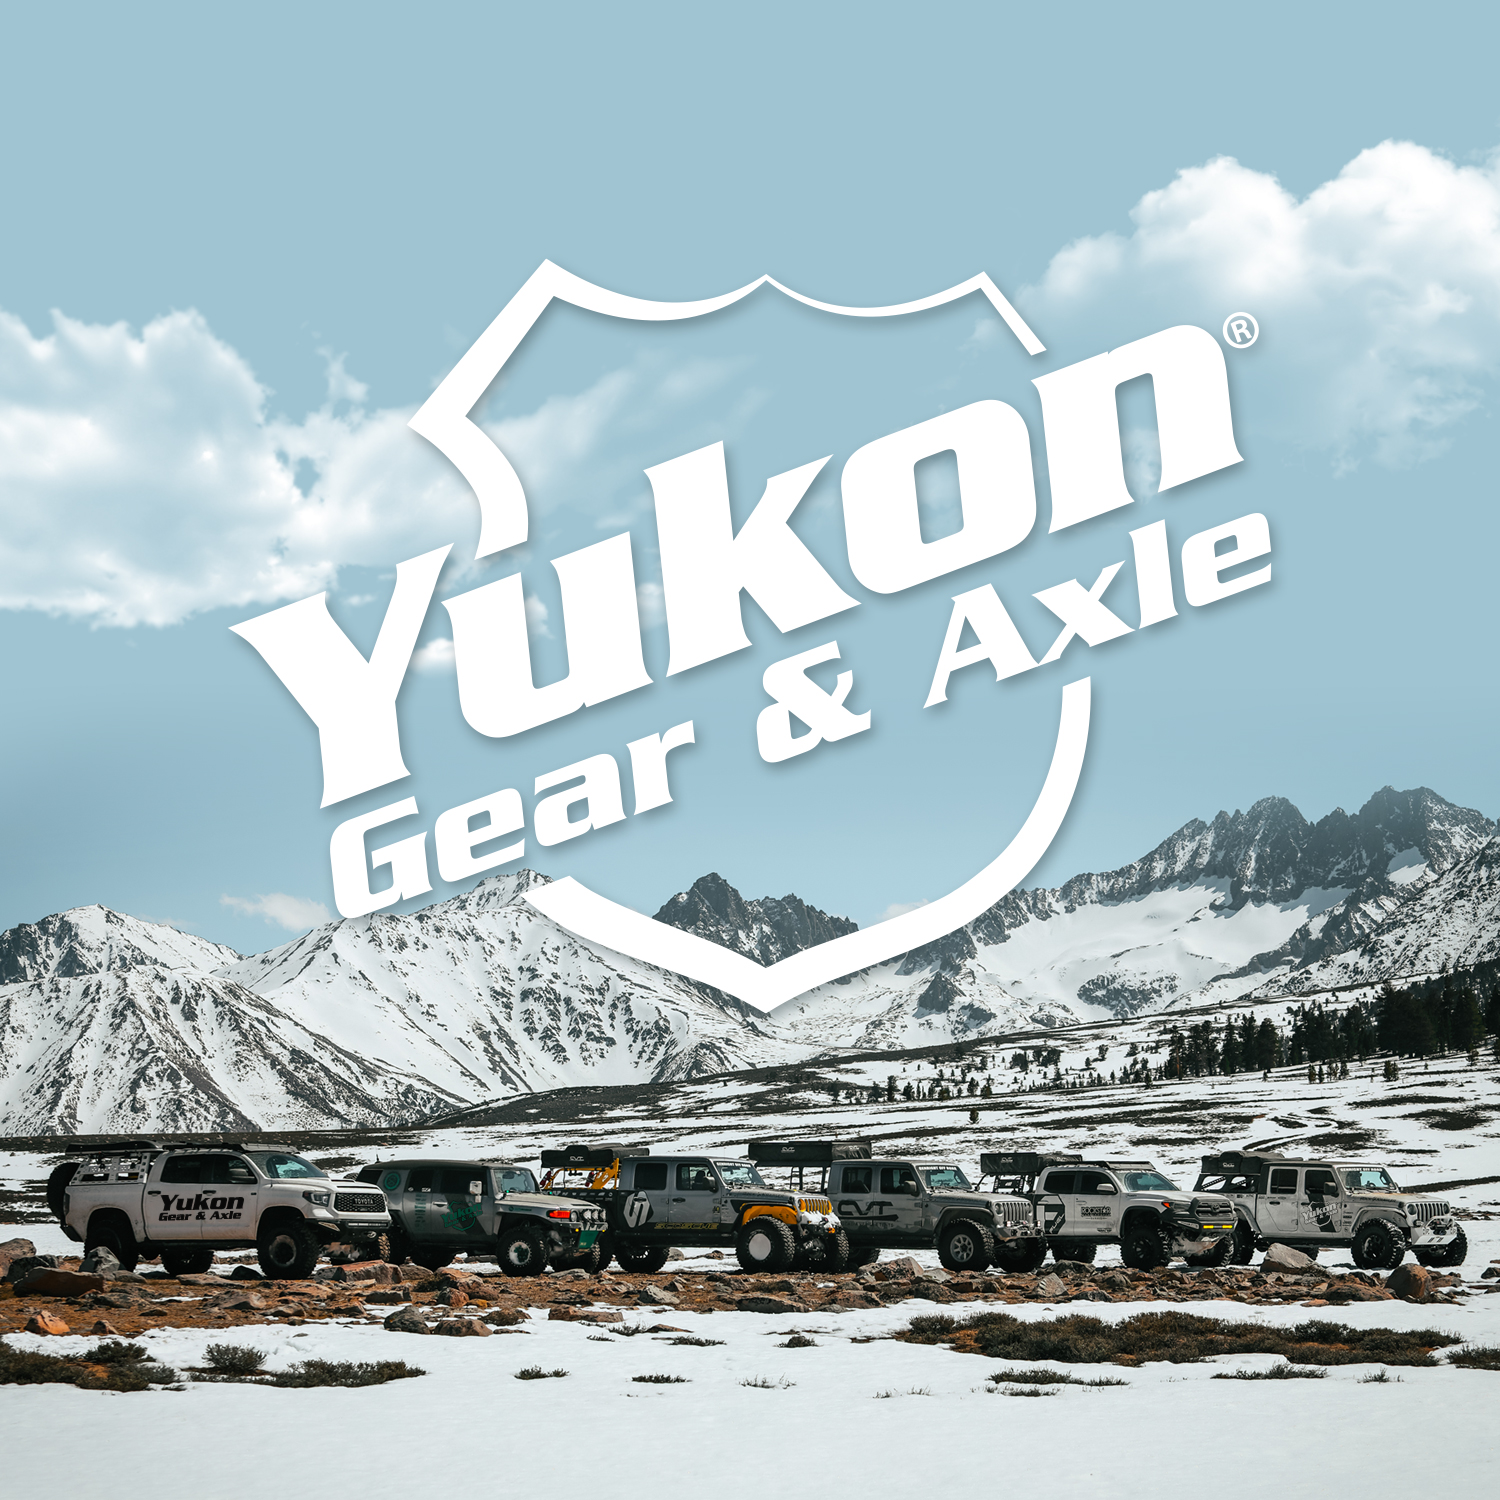 Yukon standard open spider gear kit for 11.5" Chrysler with 30 spline axles 